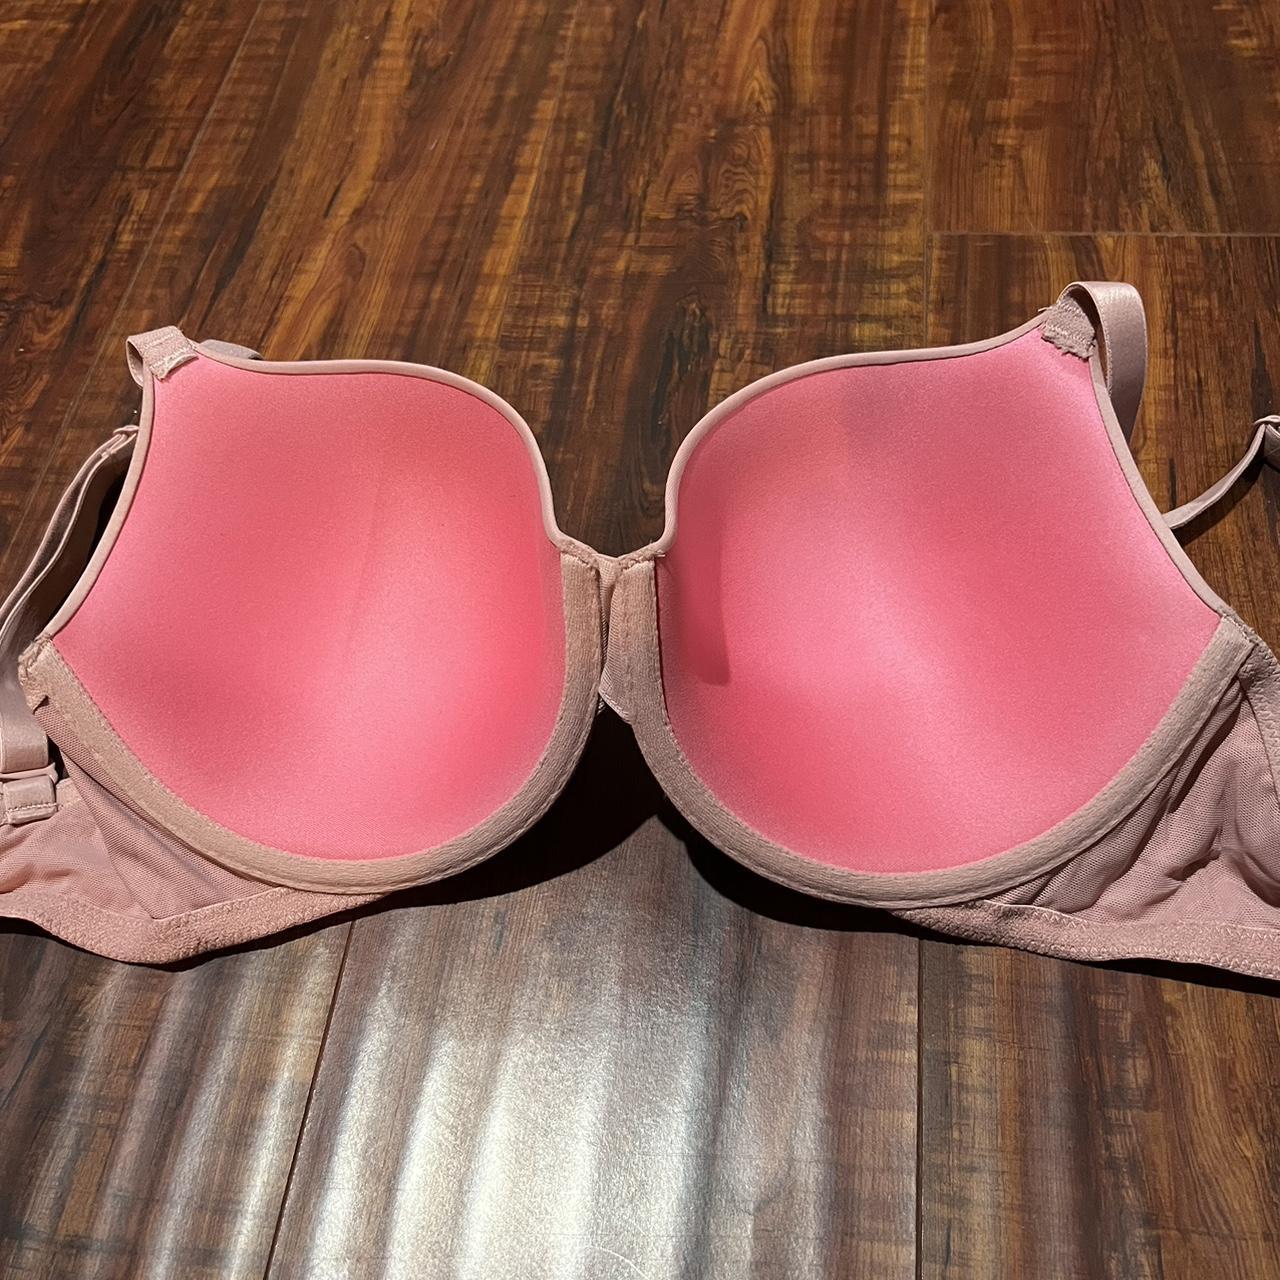 Victoria's secret demi bra pink 34D. Fair condition - Depop